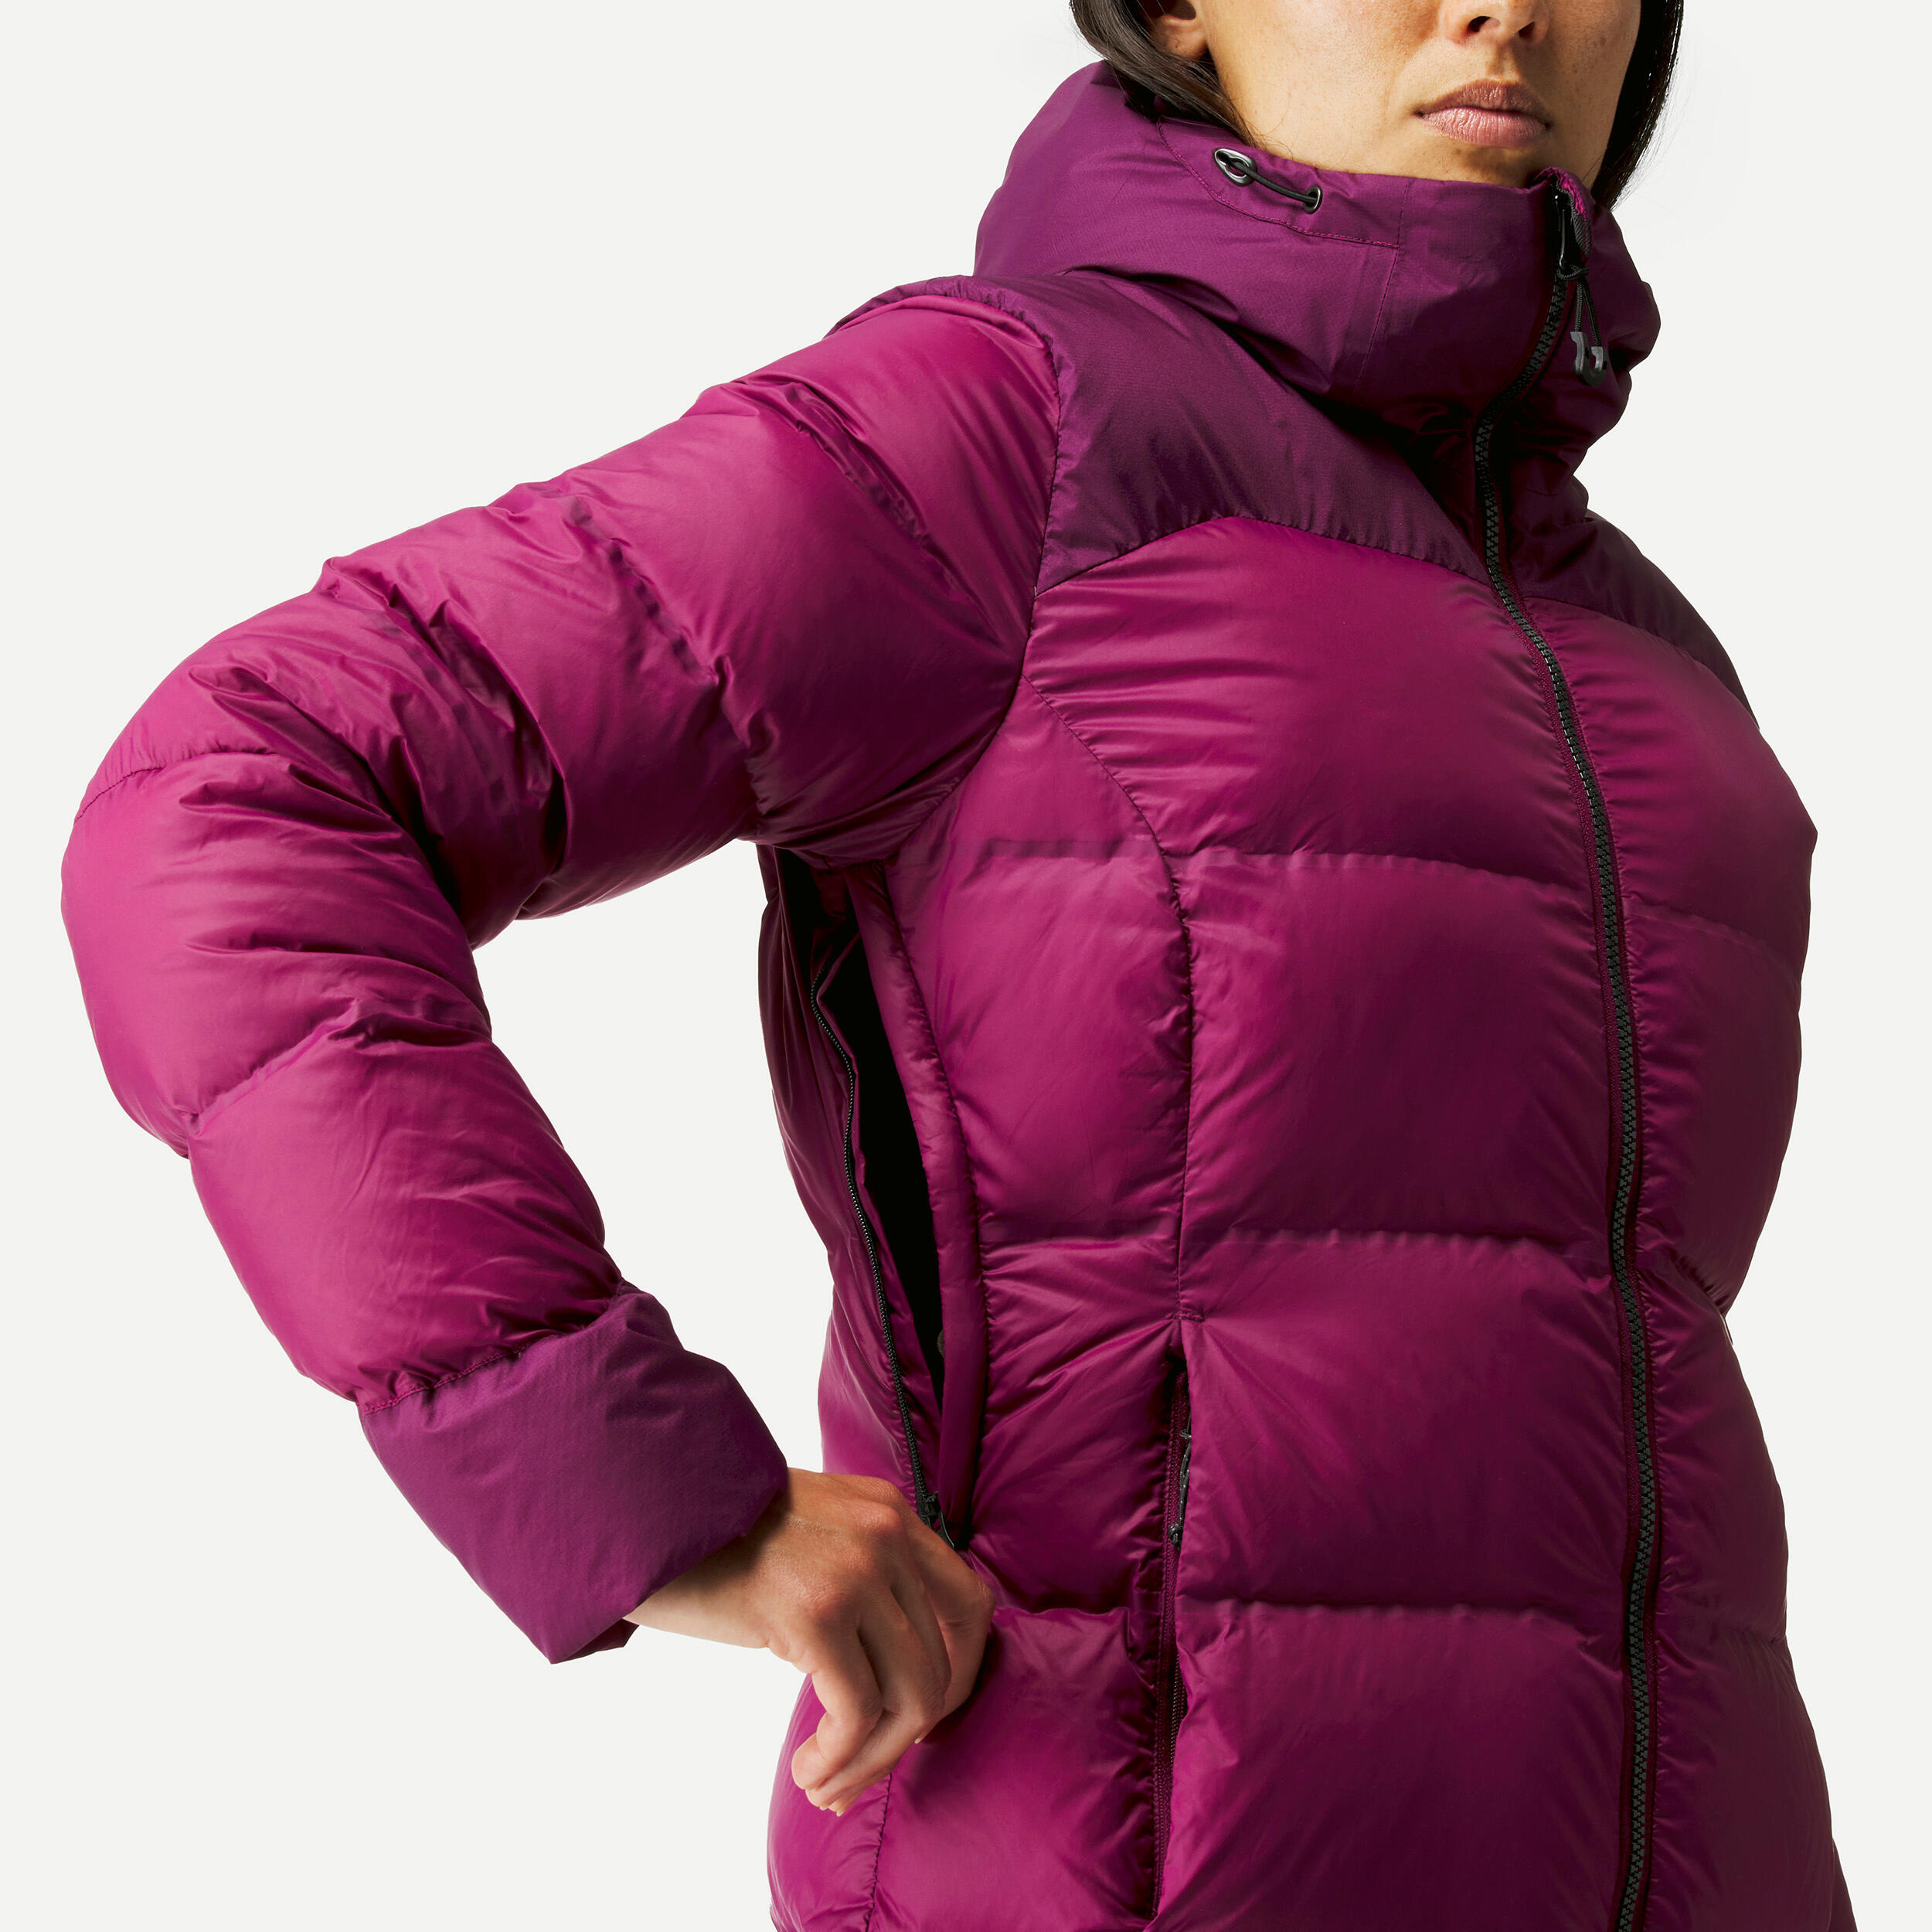 Women’s Mountain Trekking Down Jacket with Hood - MT900 -18°C 6/11